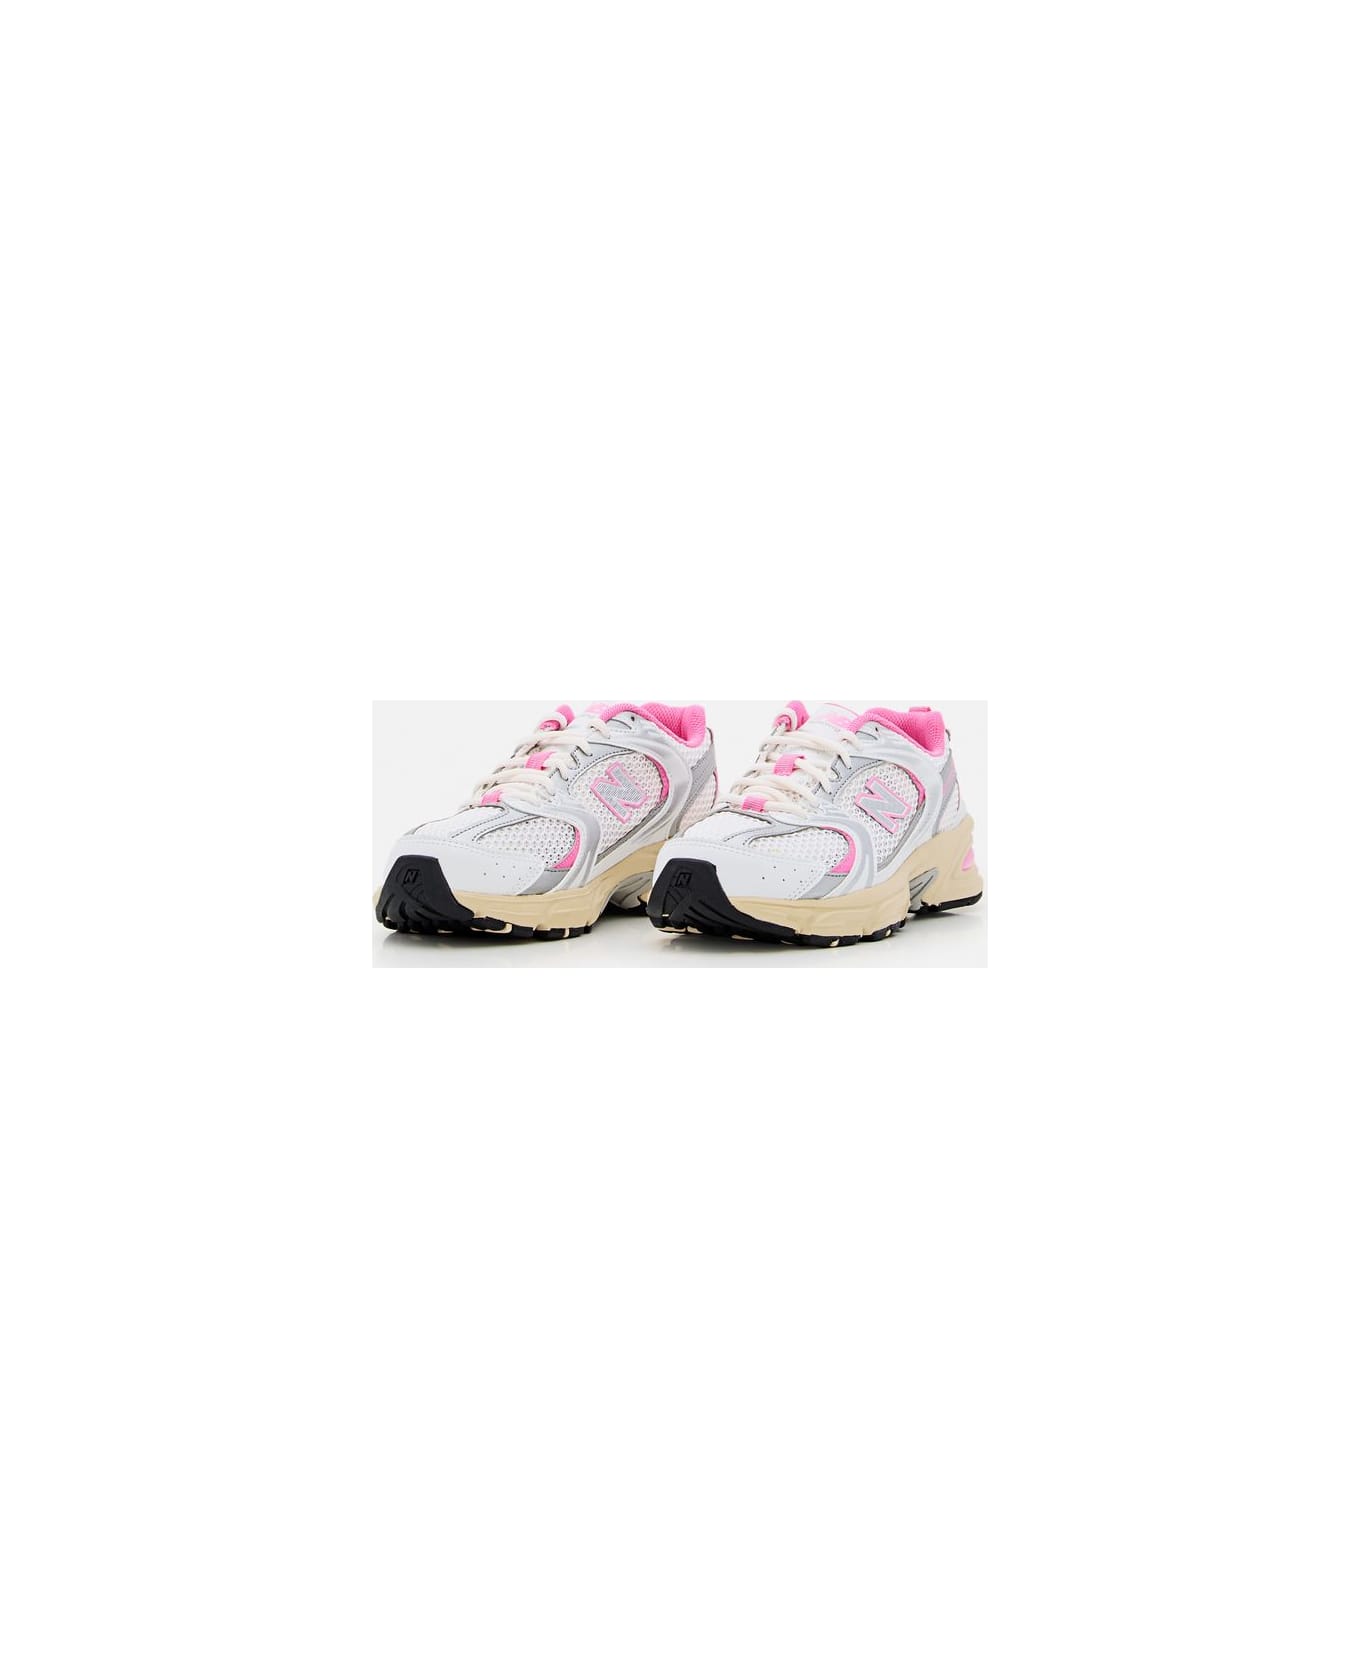 New Balance Mr530ed Sneakers - White スニーカー